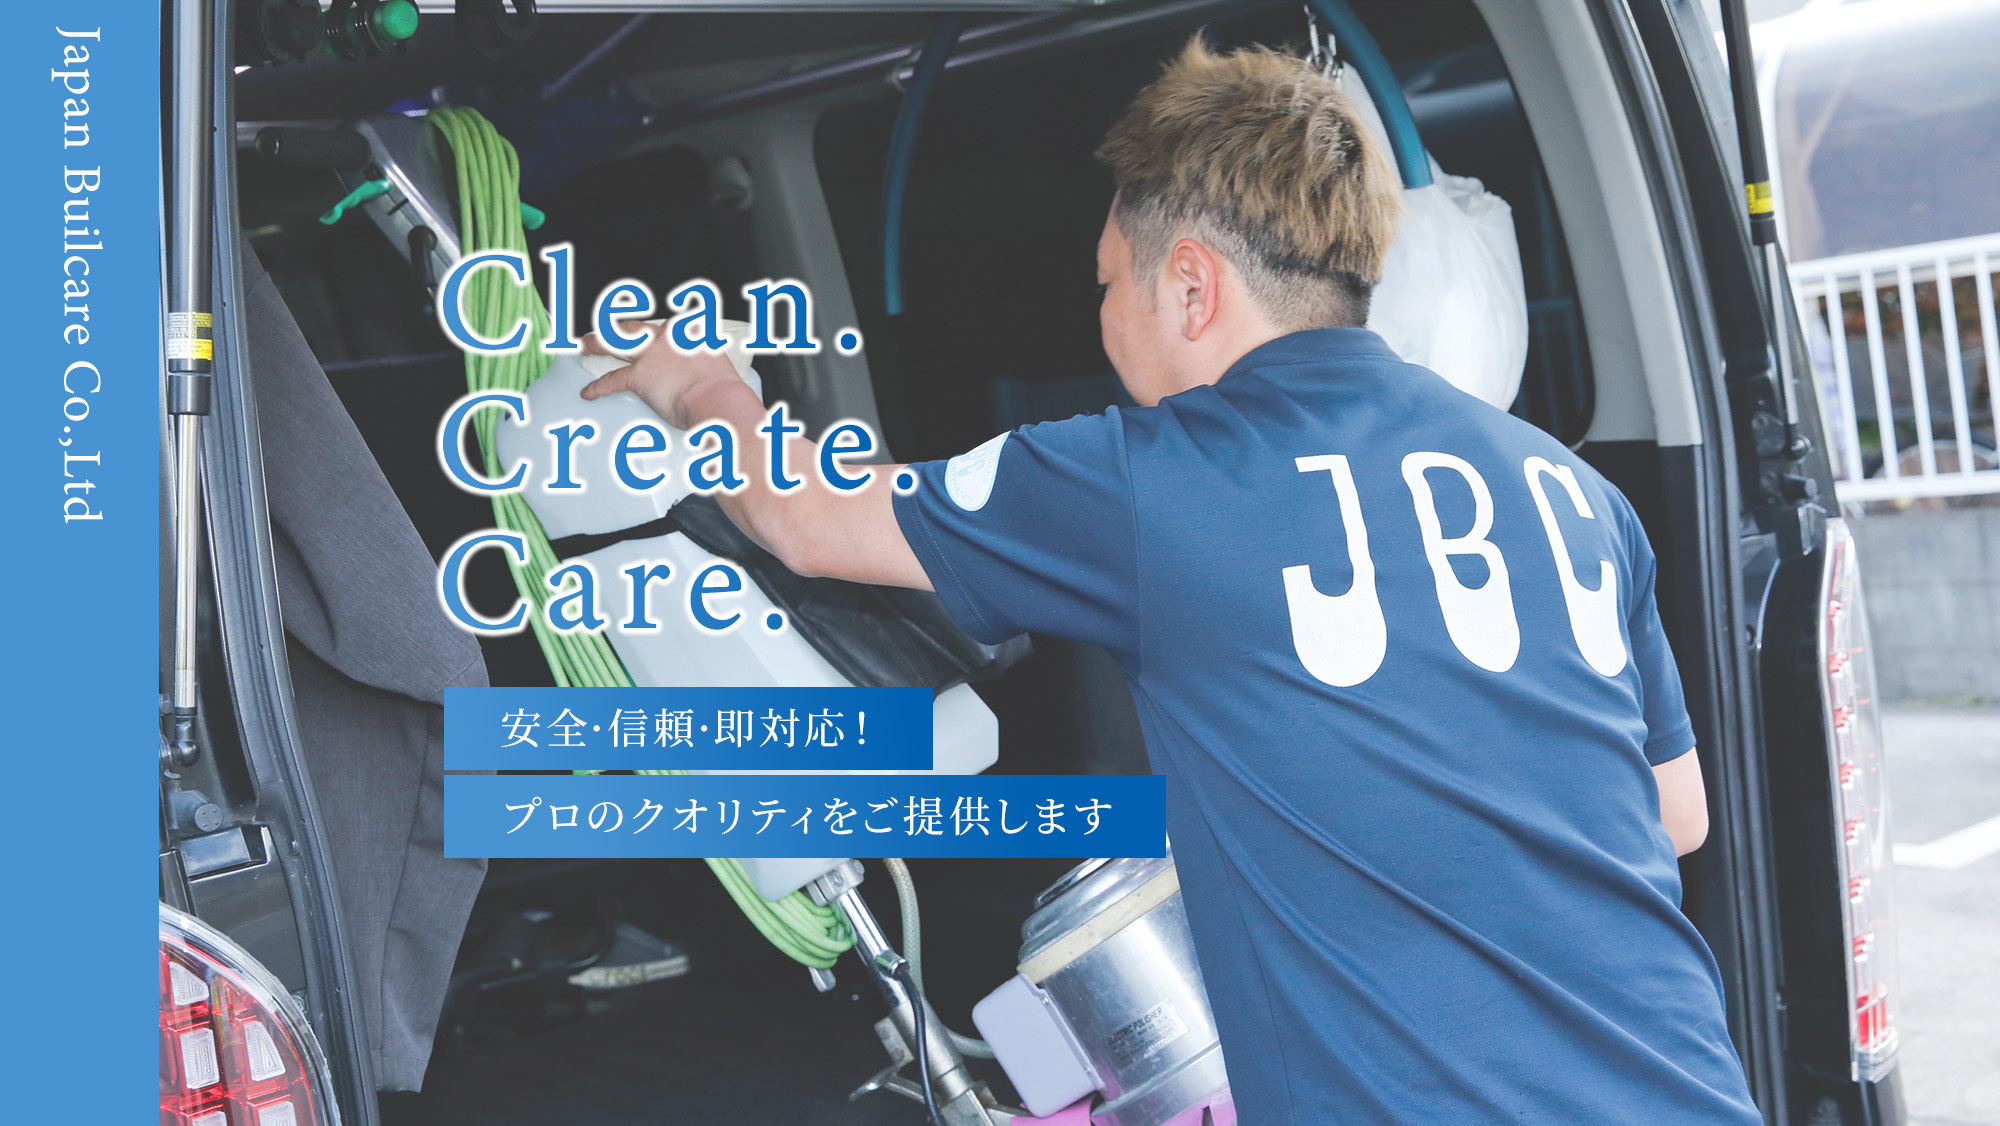 Clean. Create. Care. 